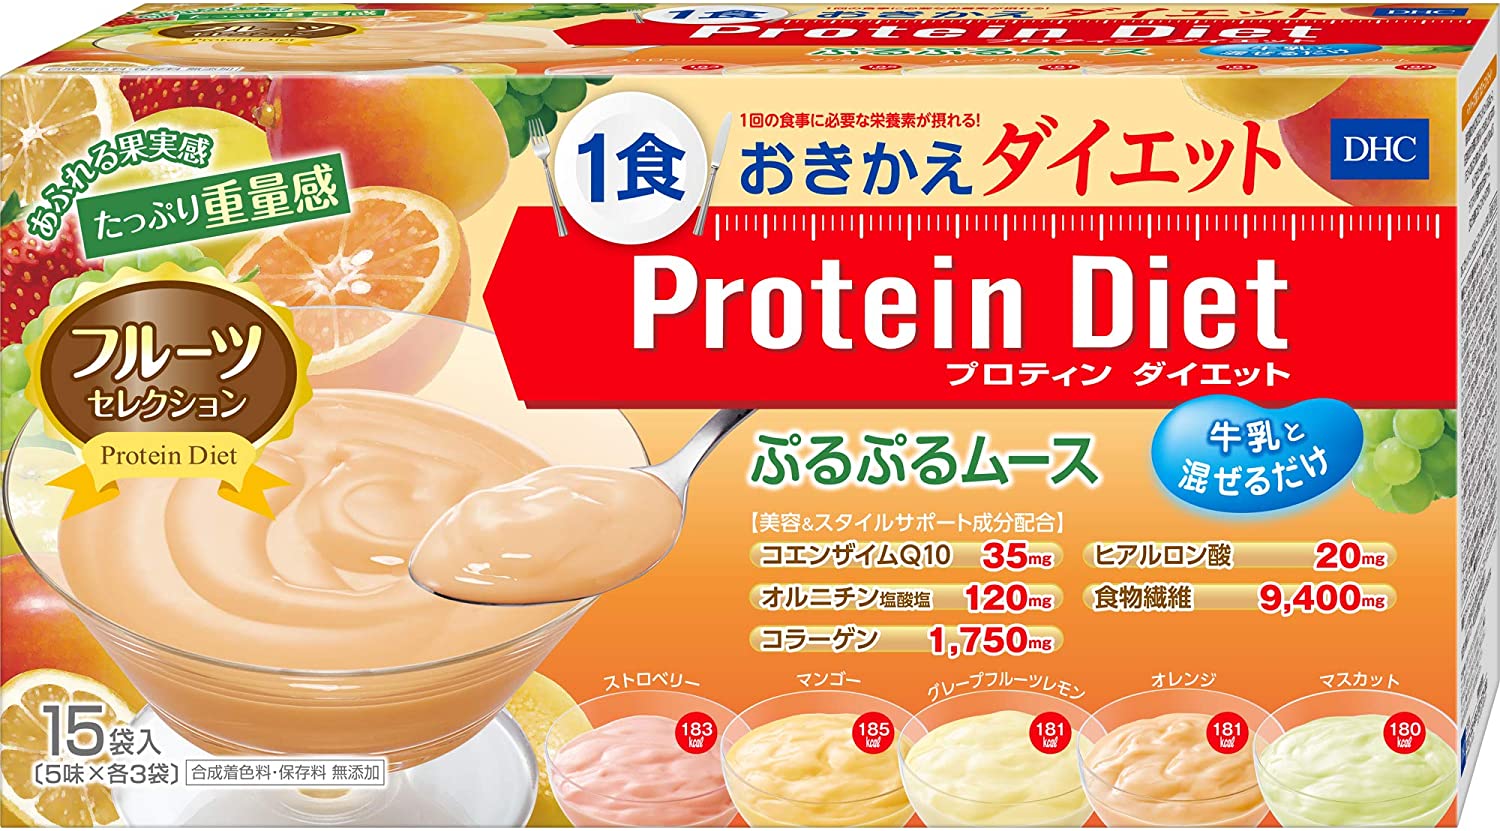 DHC プロテインダイエット ぷるぷるムース フルーツセレクション 15袋入 送料無料